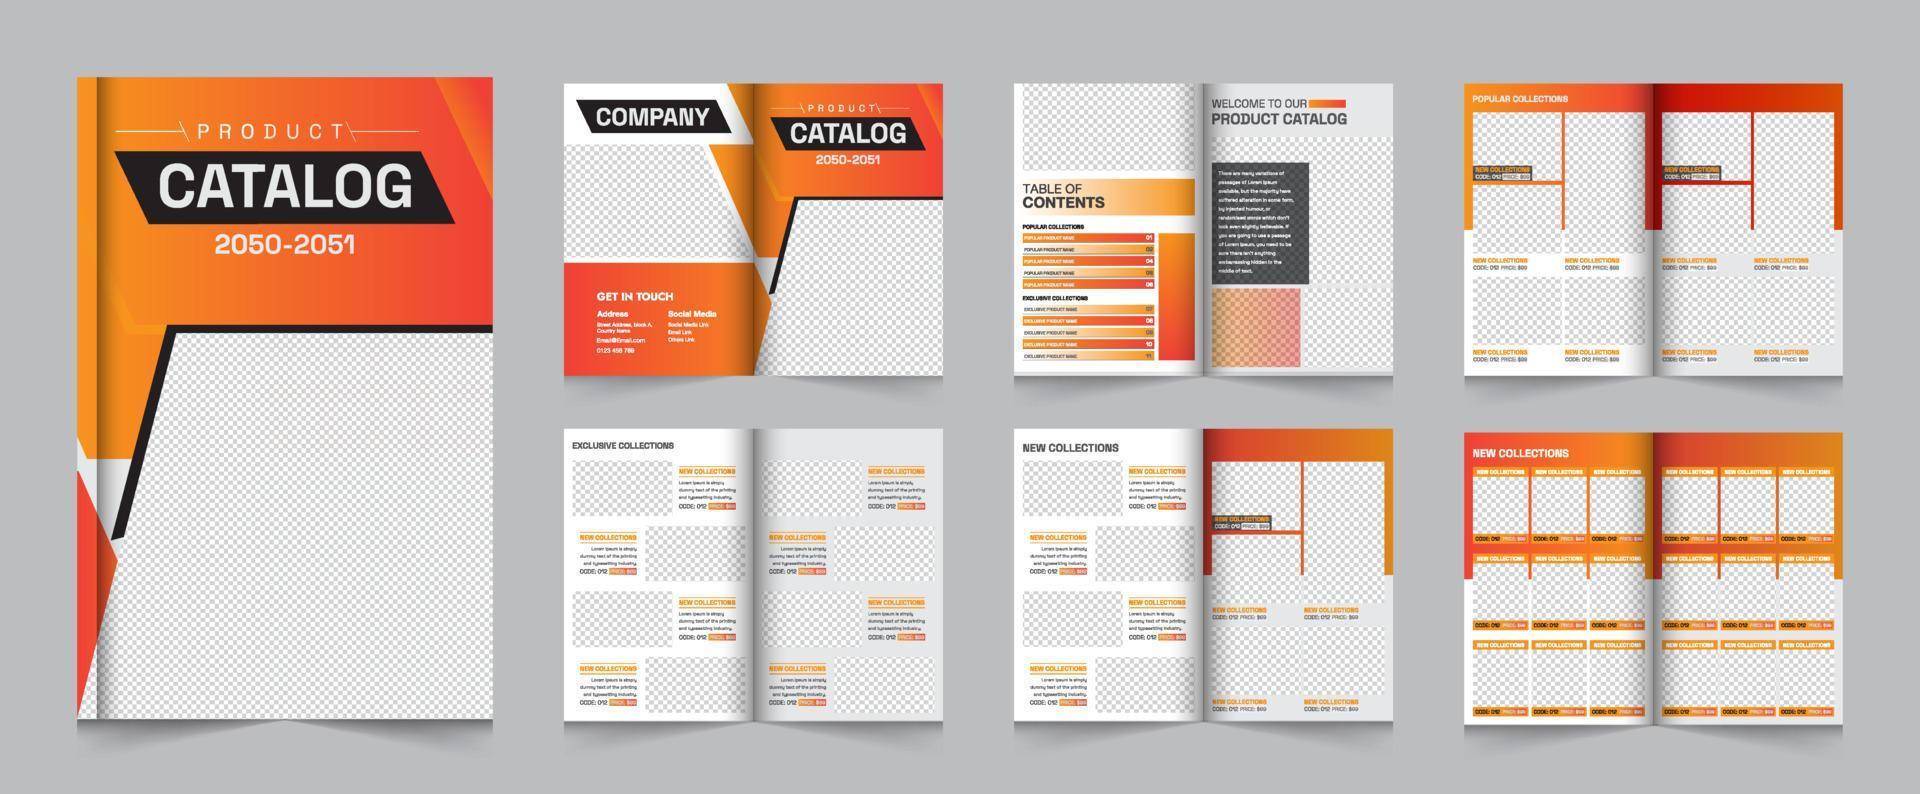 plantilla de diseño de catálogo de productos a4 multipropósito moderno, diseño de plantilla de folleto de producto minimalista vector